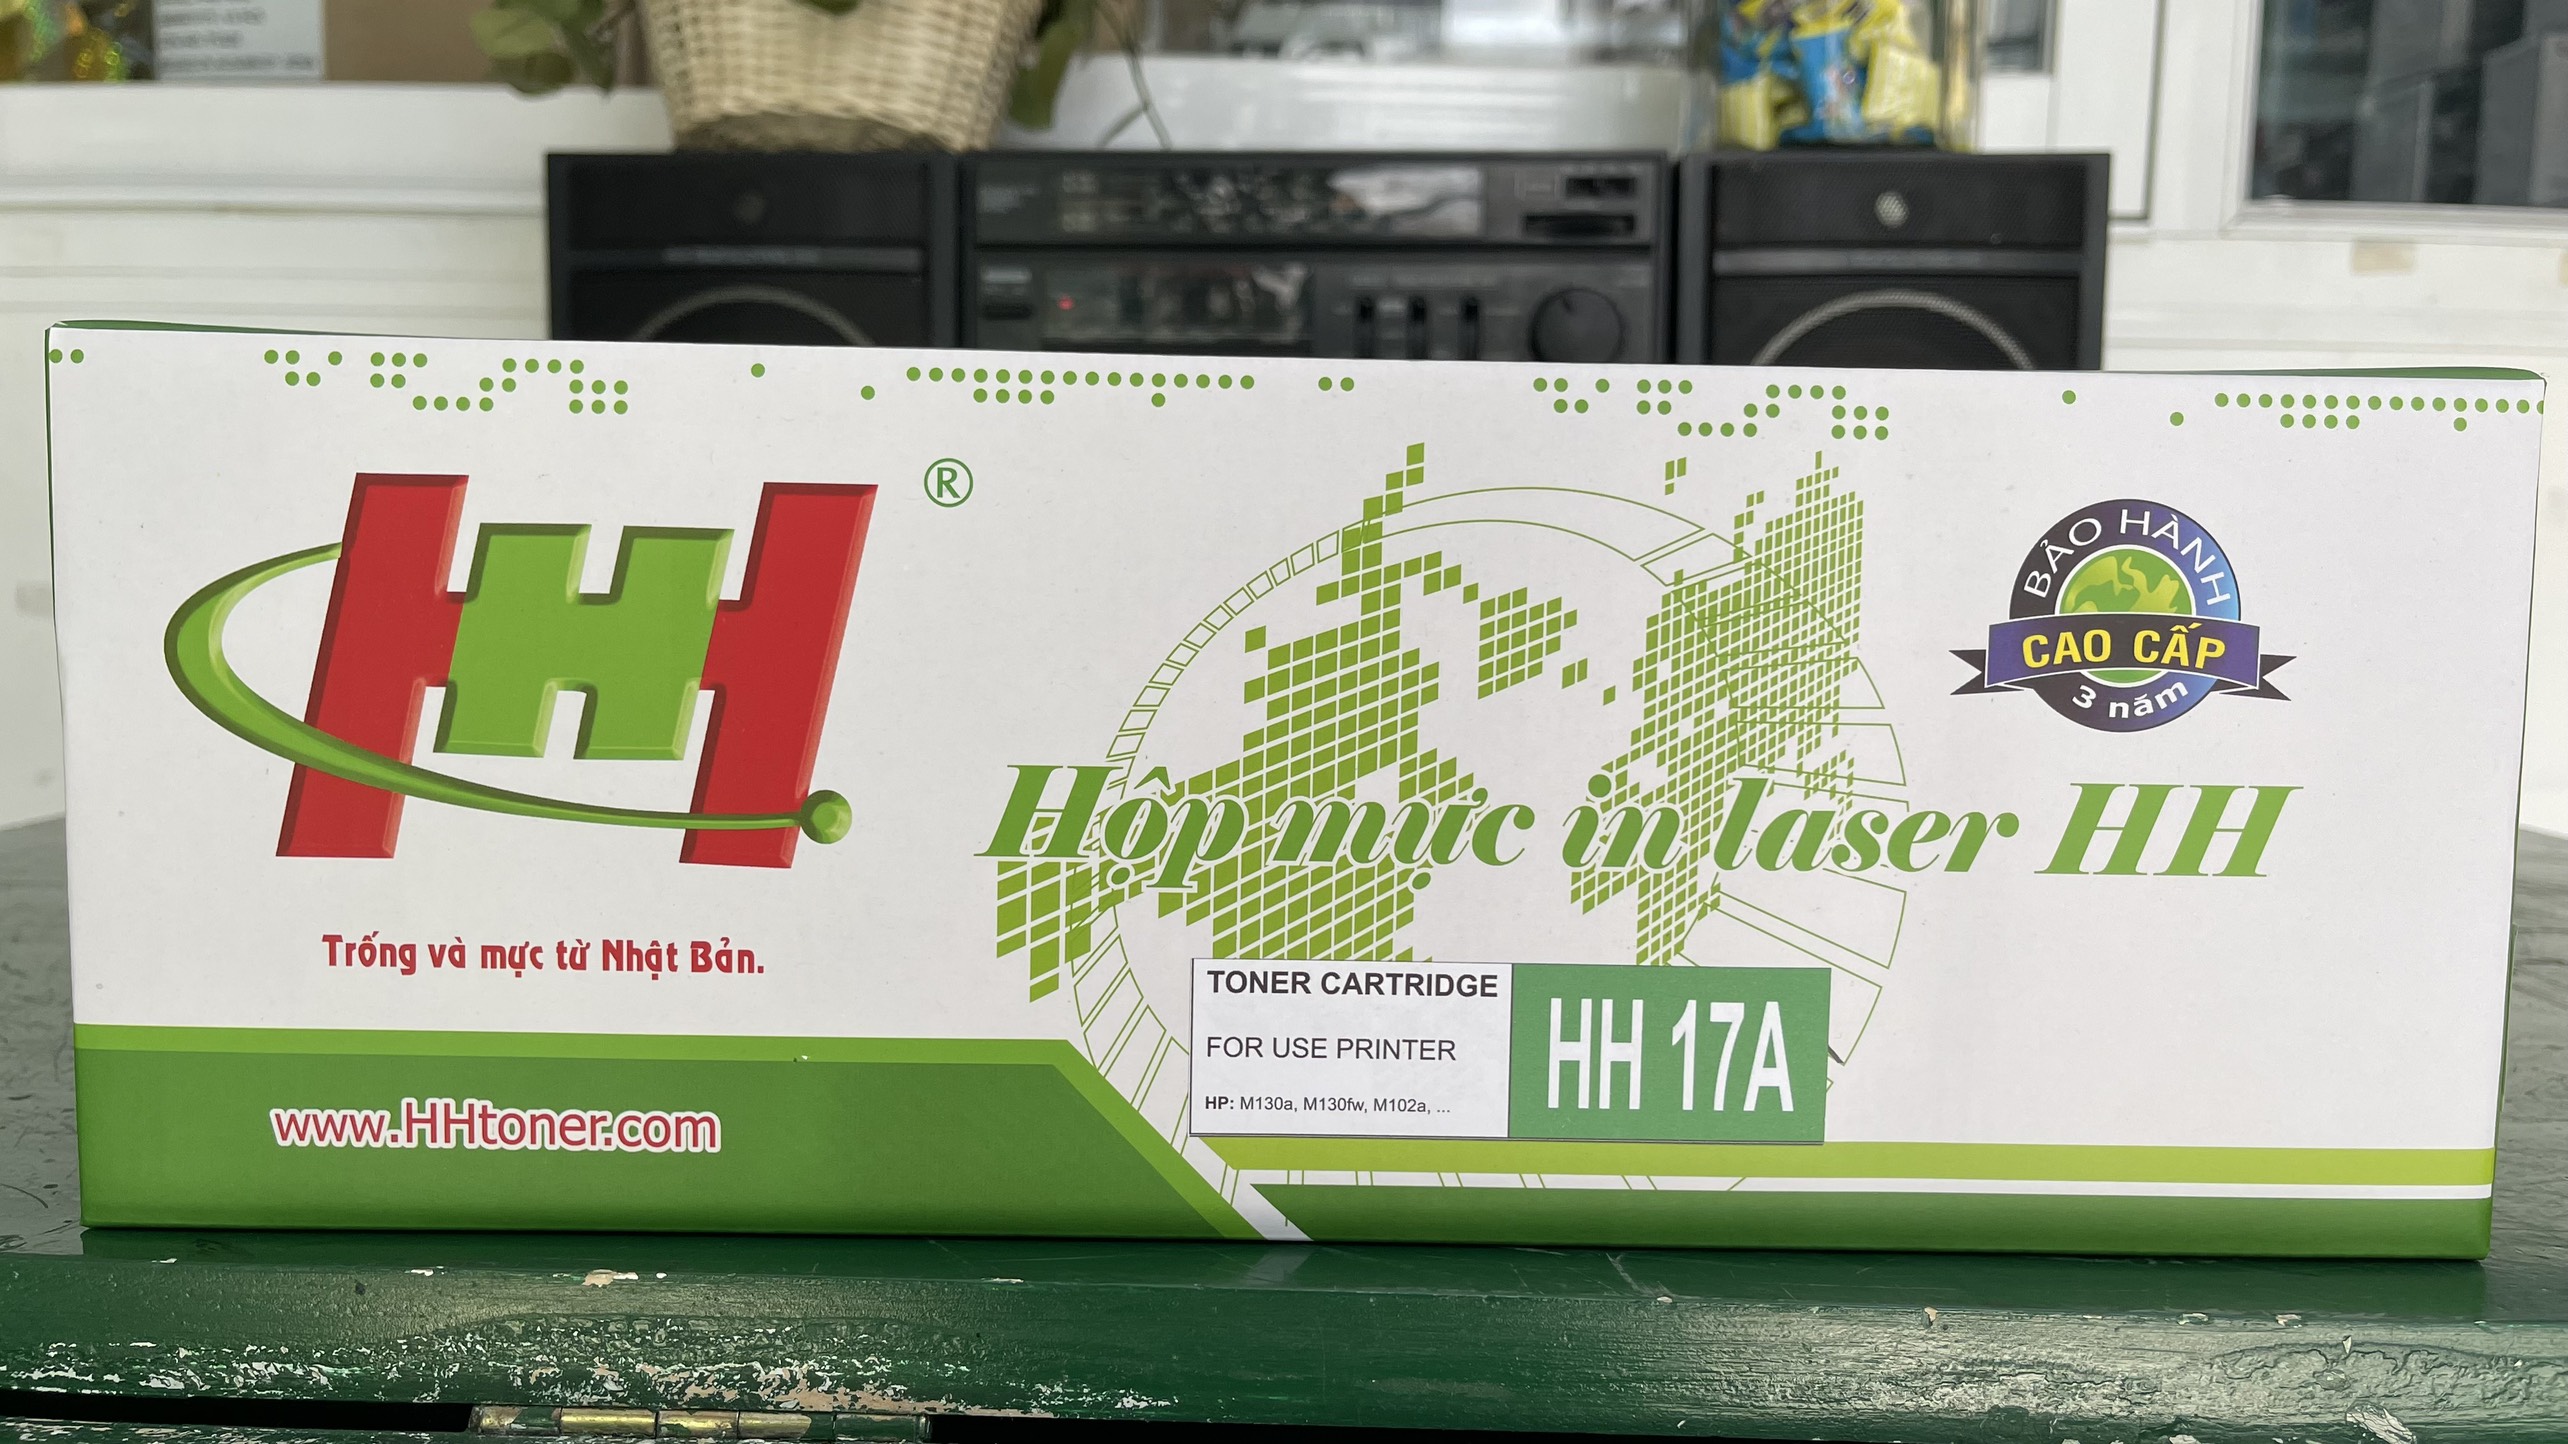 Mực HH 17A có chip - Hàng chính hãng